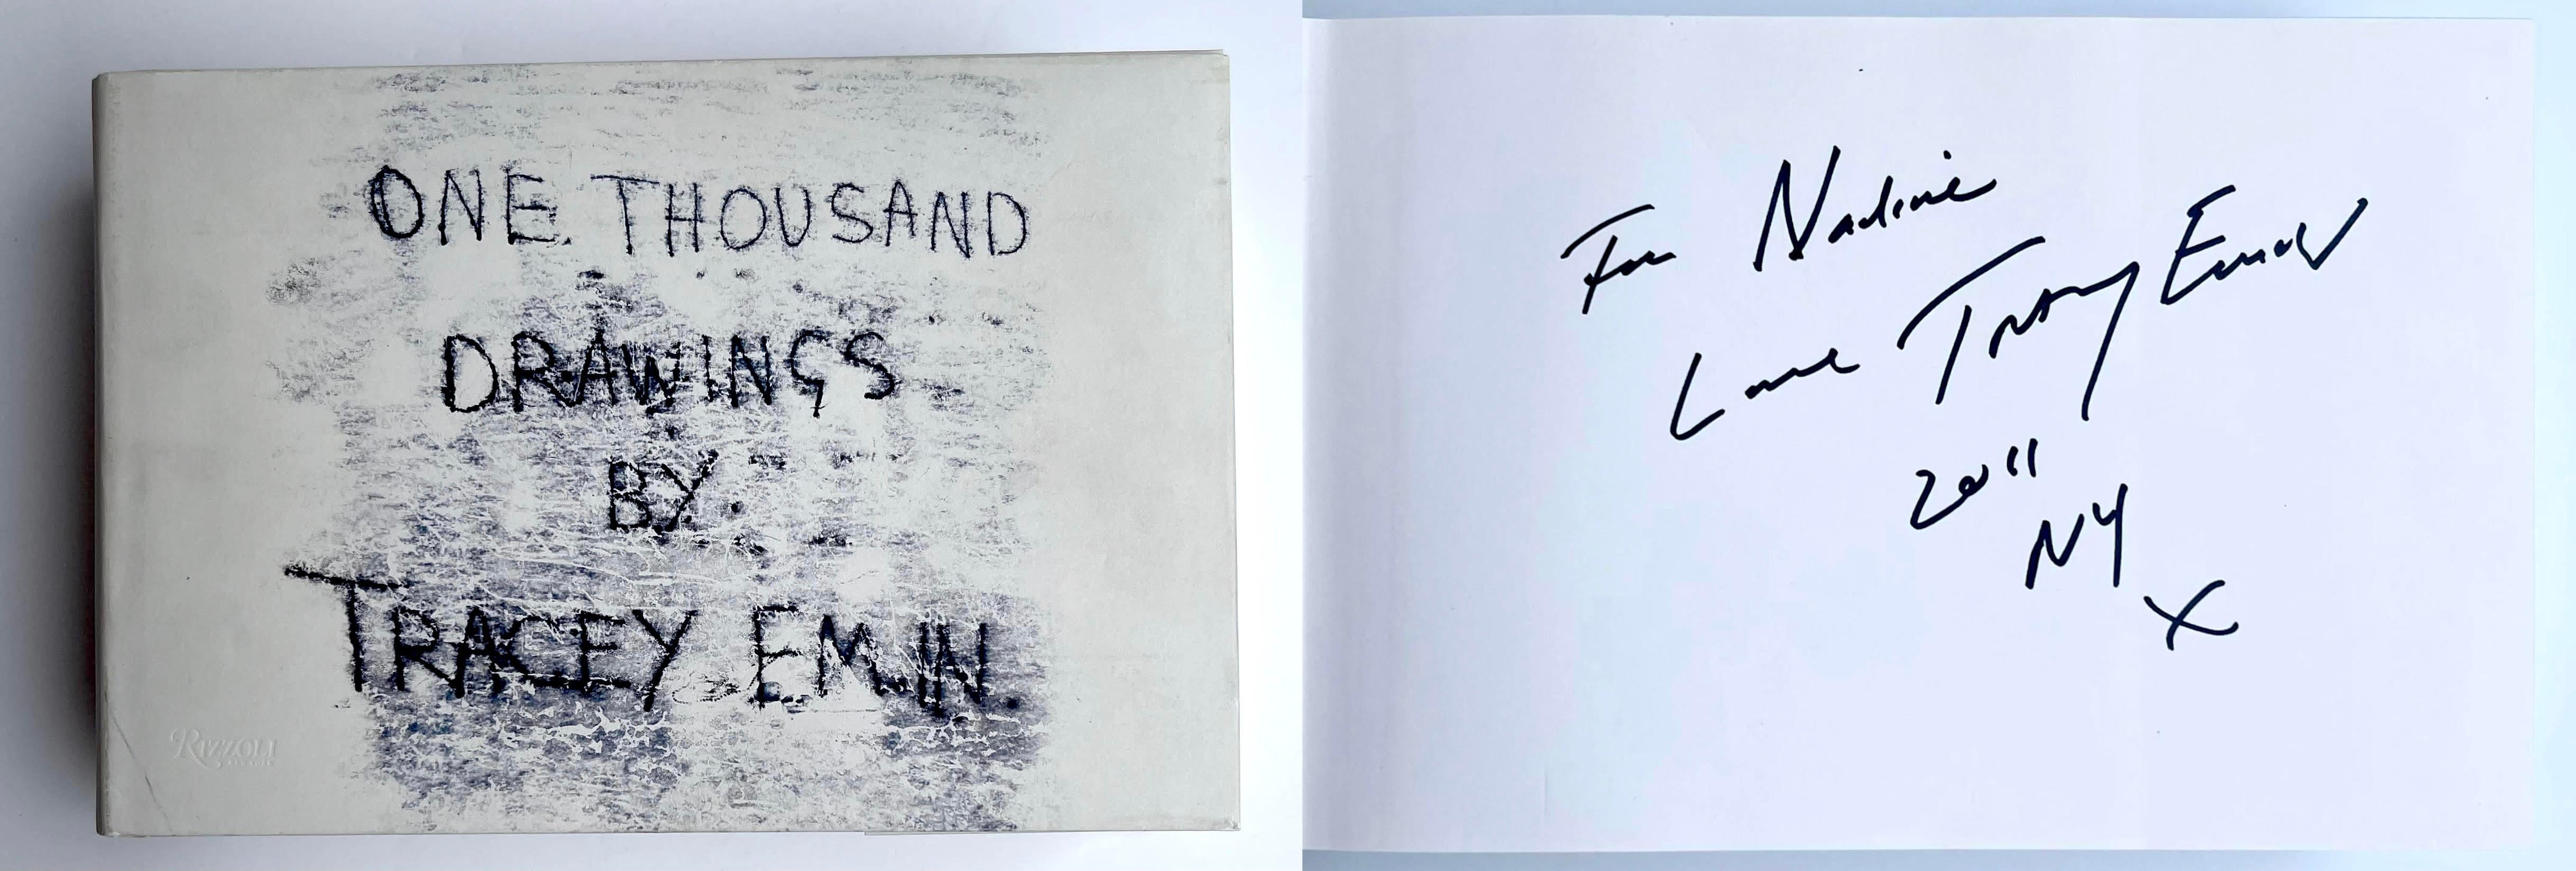 Tracey Emin
One Thousand Drawings By Tracey Emin (signé et inscrit à la main pour Nadine), 2009
Monographie reliée avec jaquette (signée à l'encre et dédicacée par Tracey Emin)
Signé, daté et inscrit à Nadine par Tracey Emin
7 × 10 × 2 1/2 pouces
Il